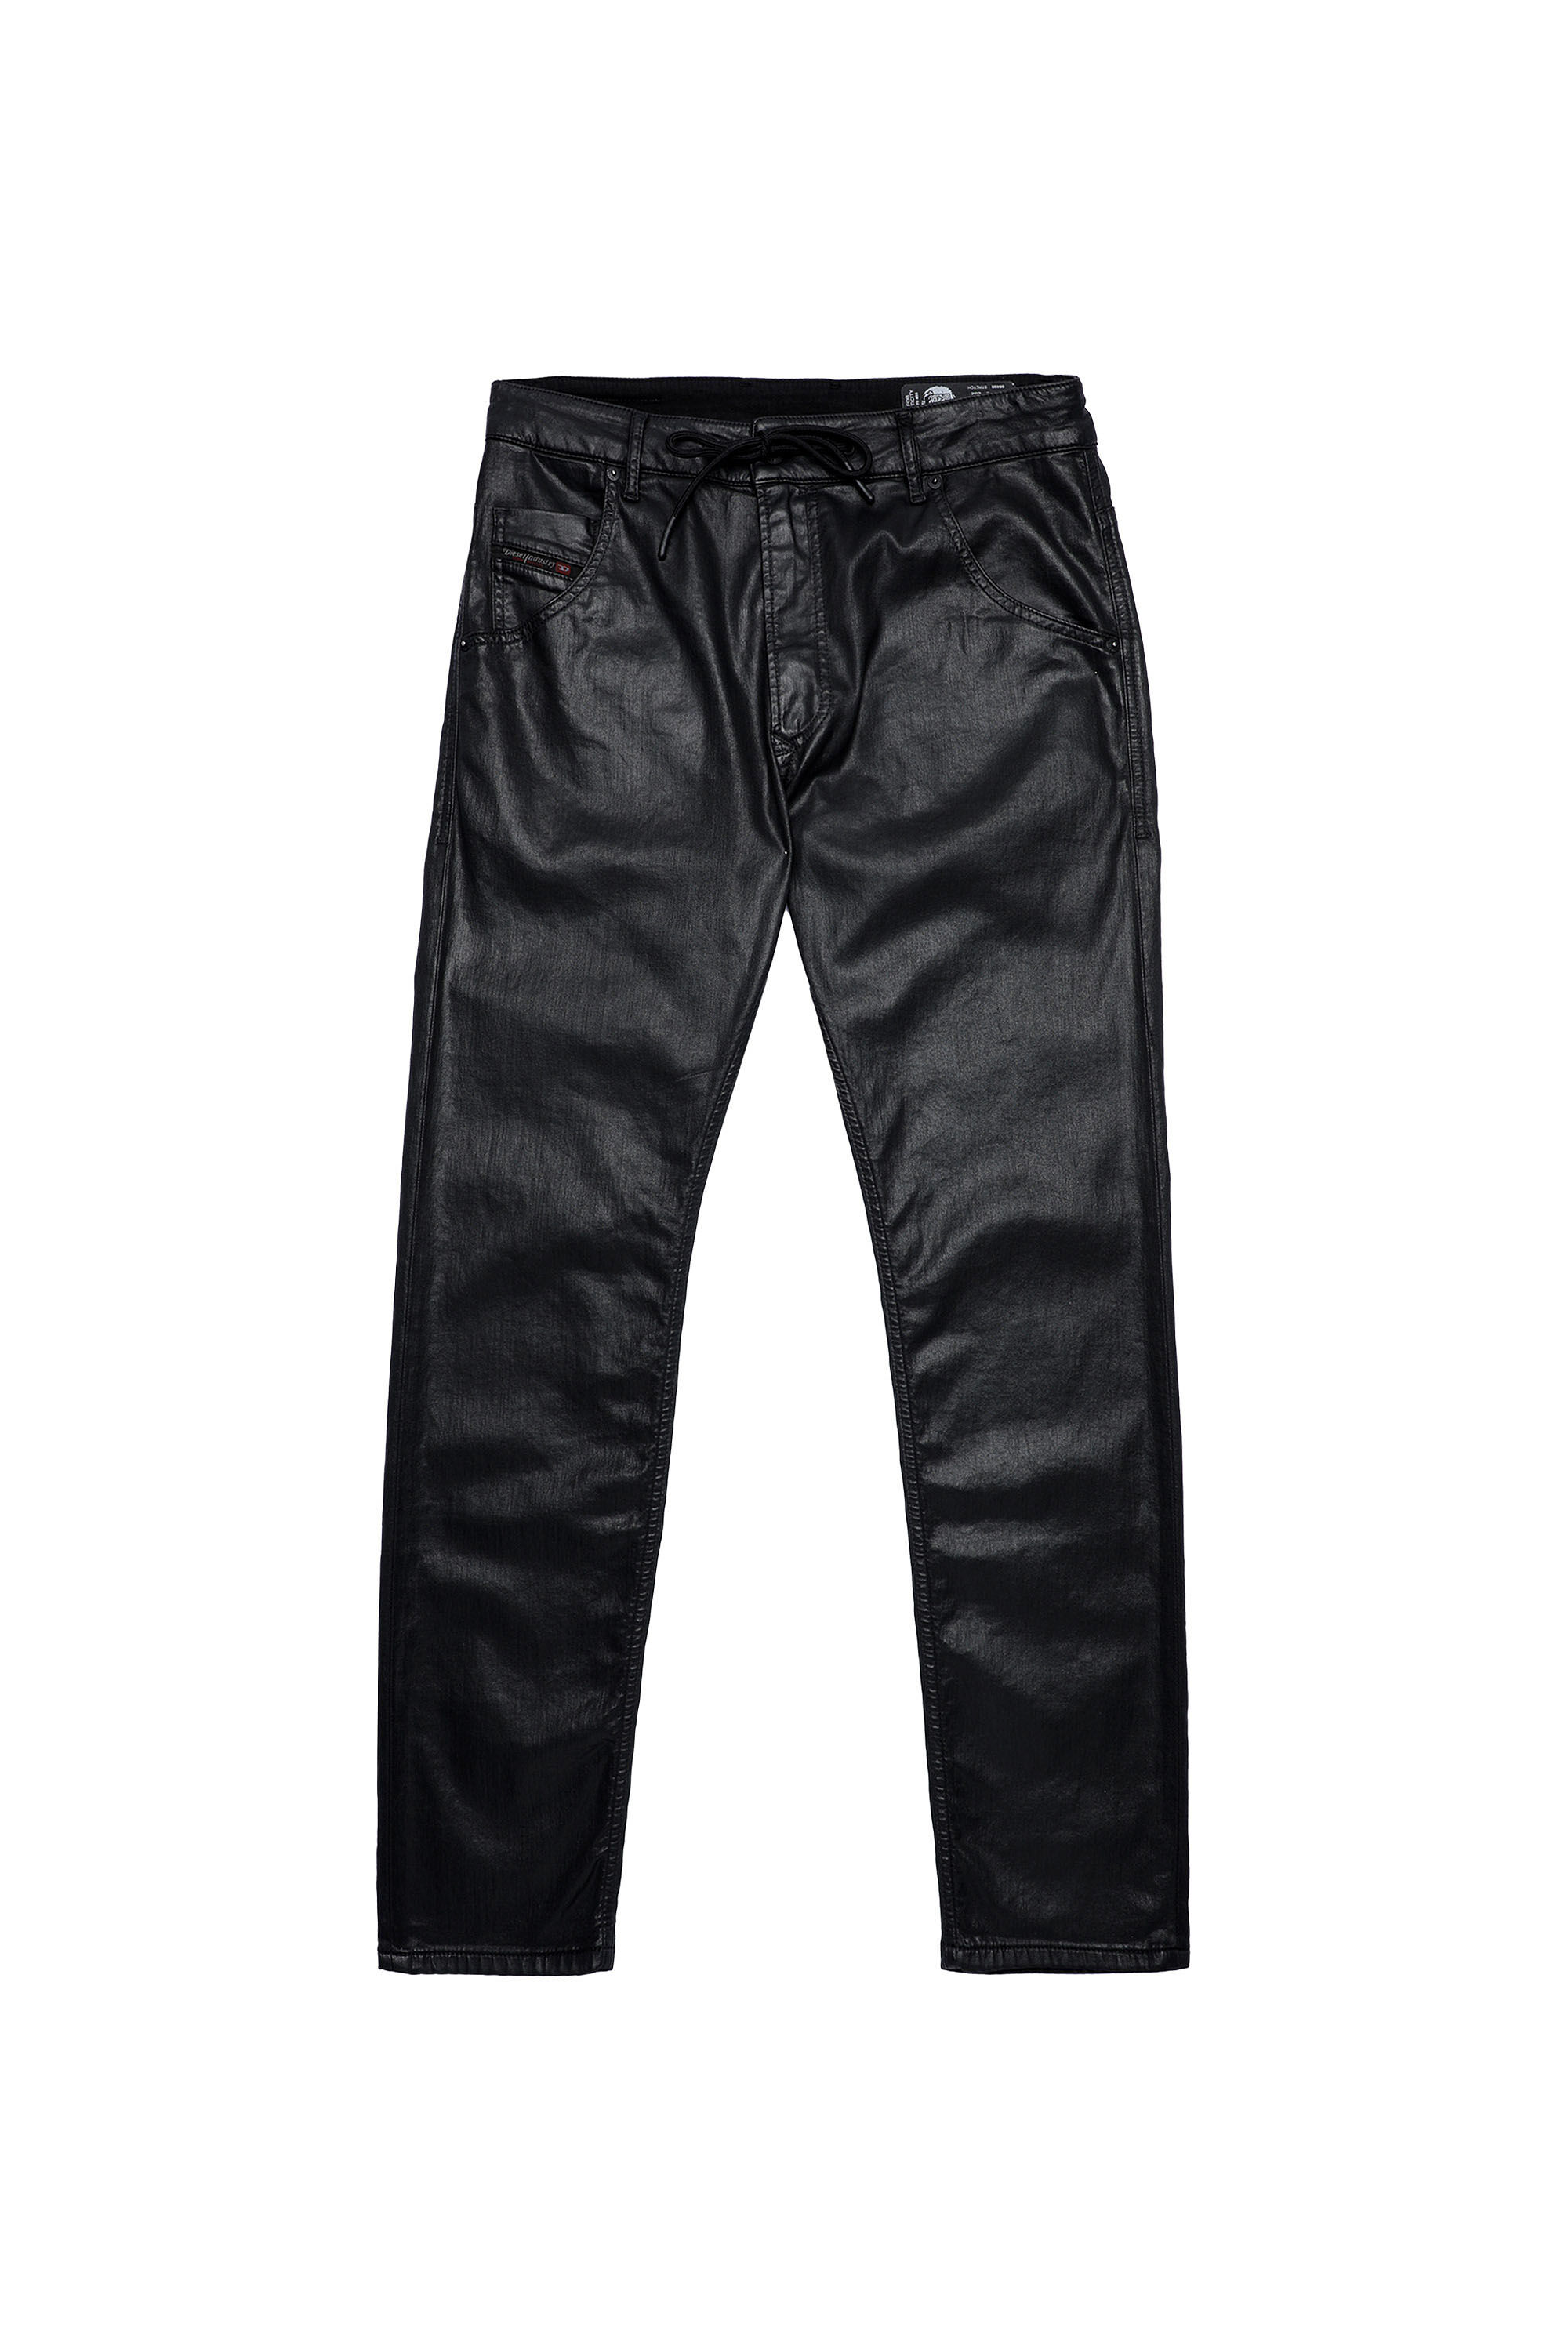 Diesel - Krooley JoggJeans® 0849R Tapered, Black/Dark Grey - Image 2